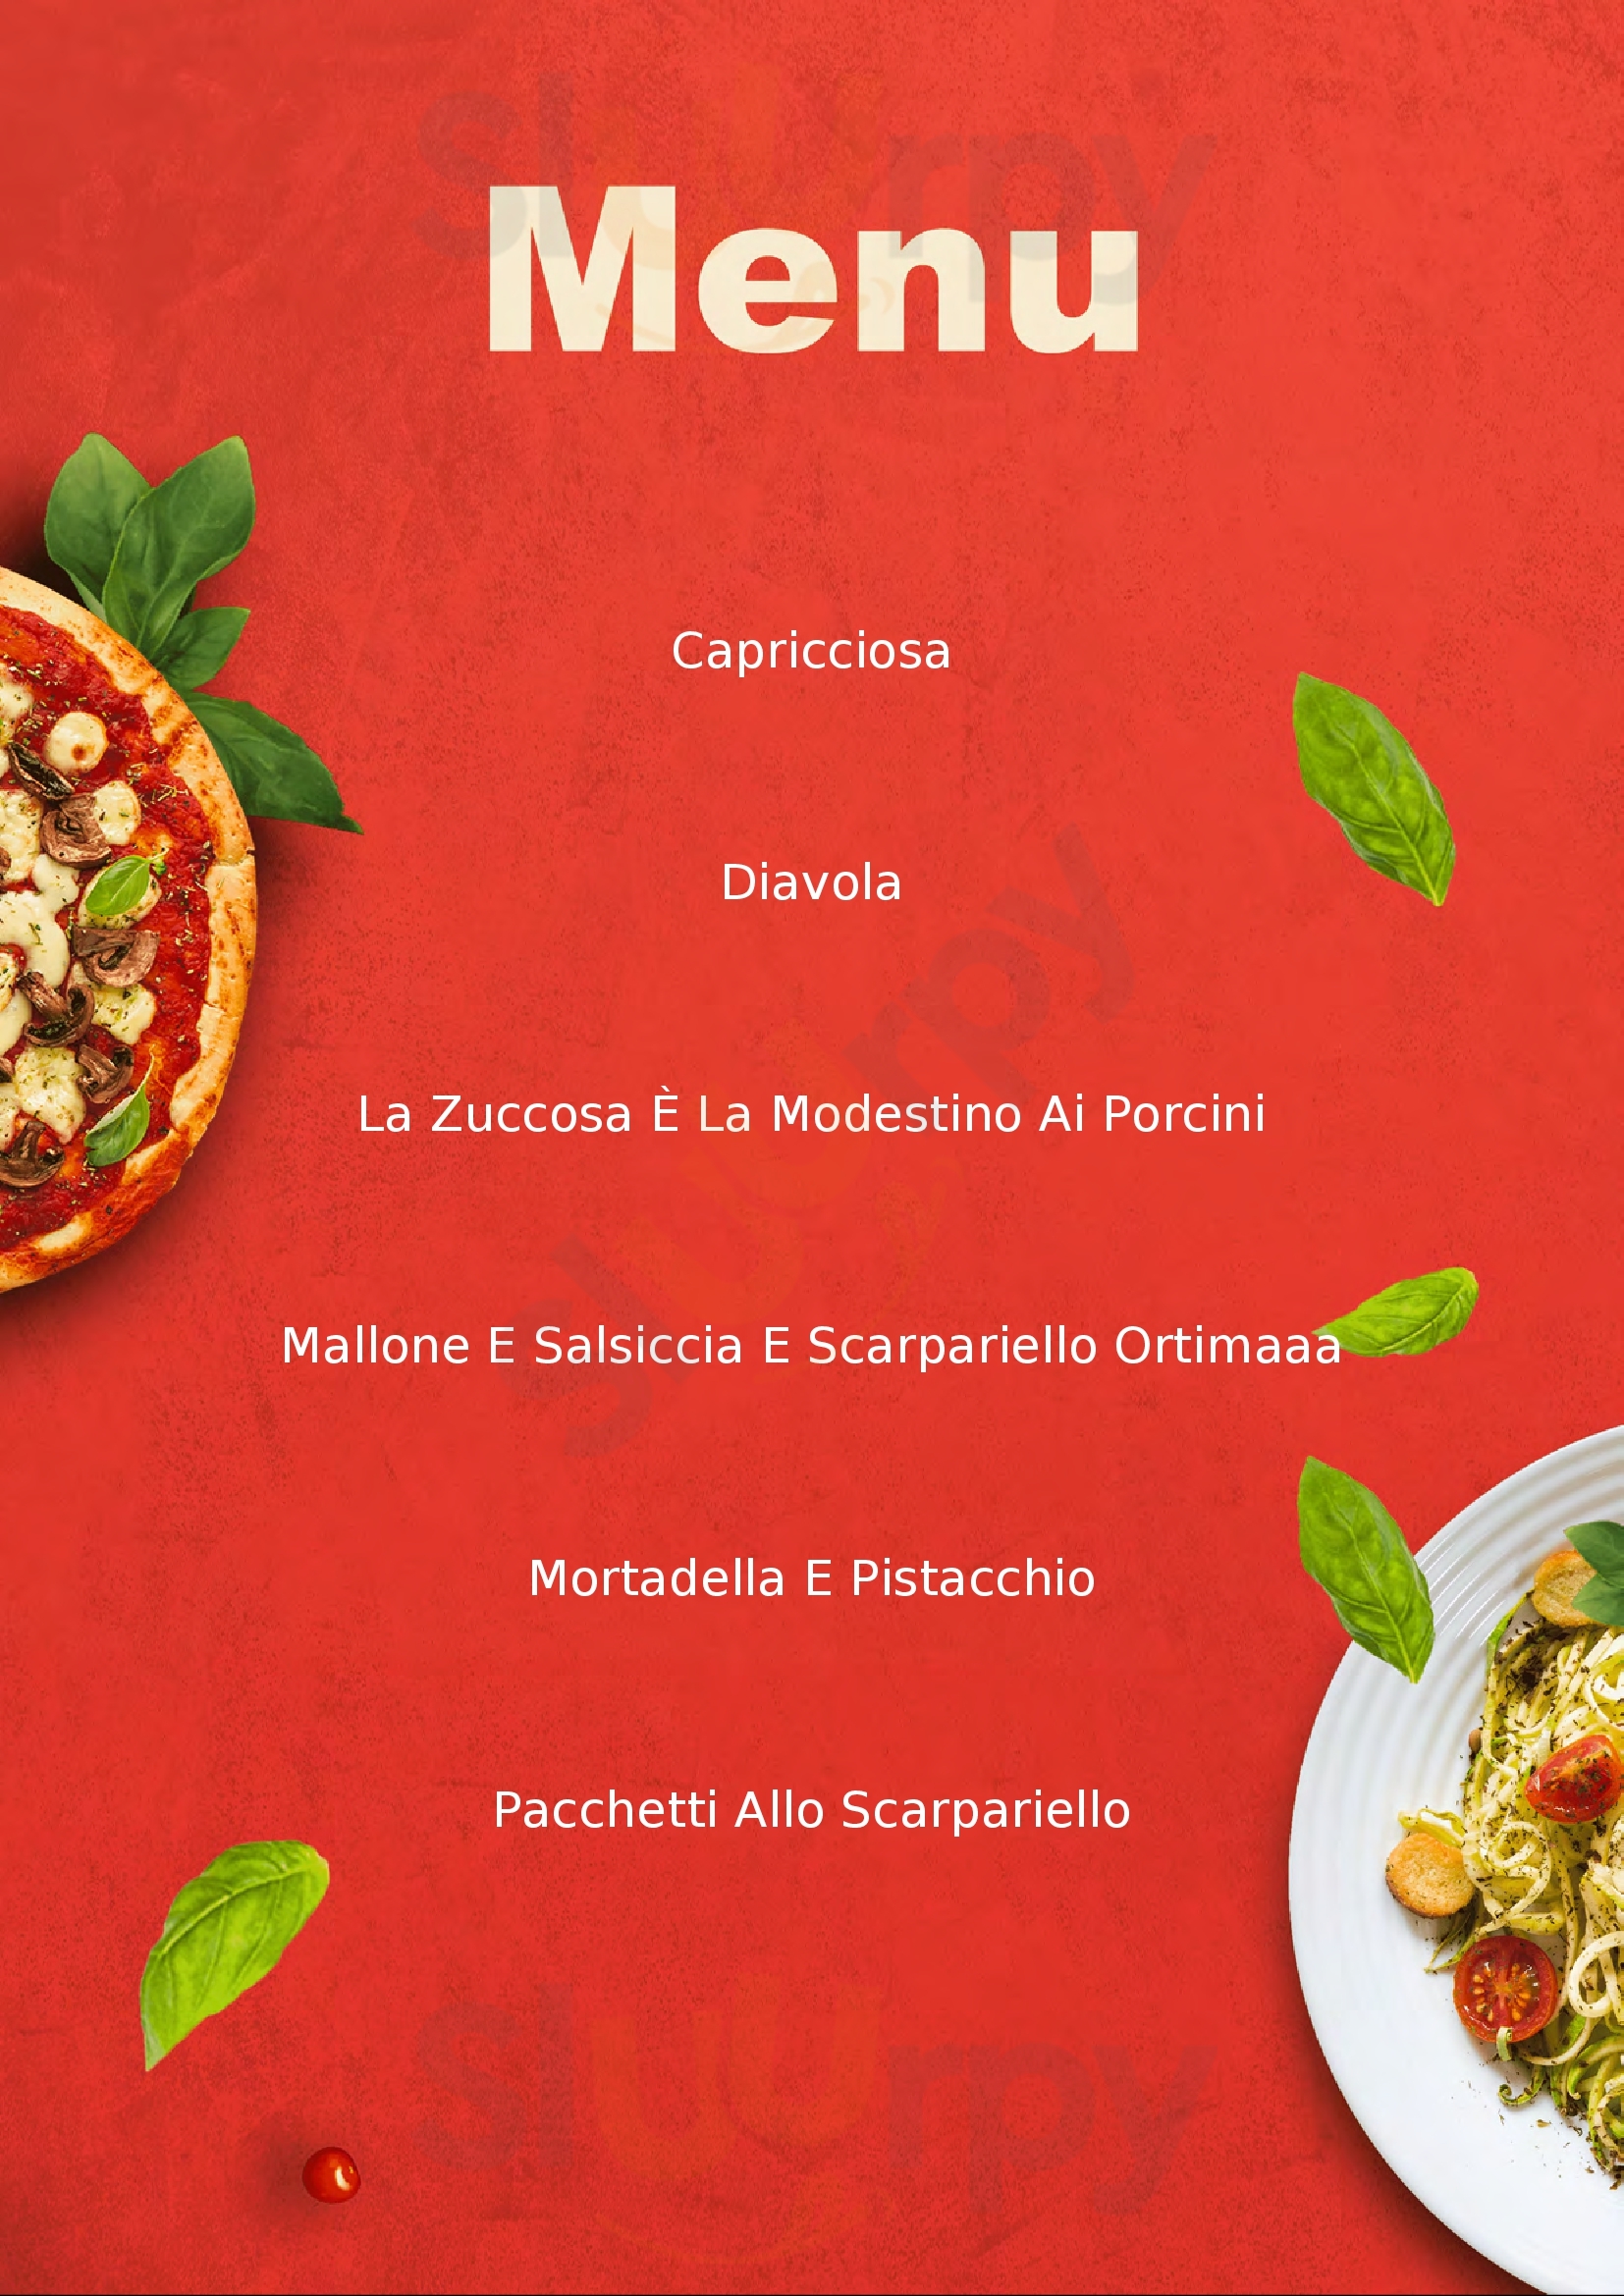 La Pizza Fisciano menù 1 pagina